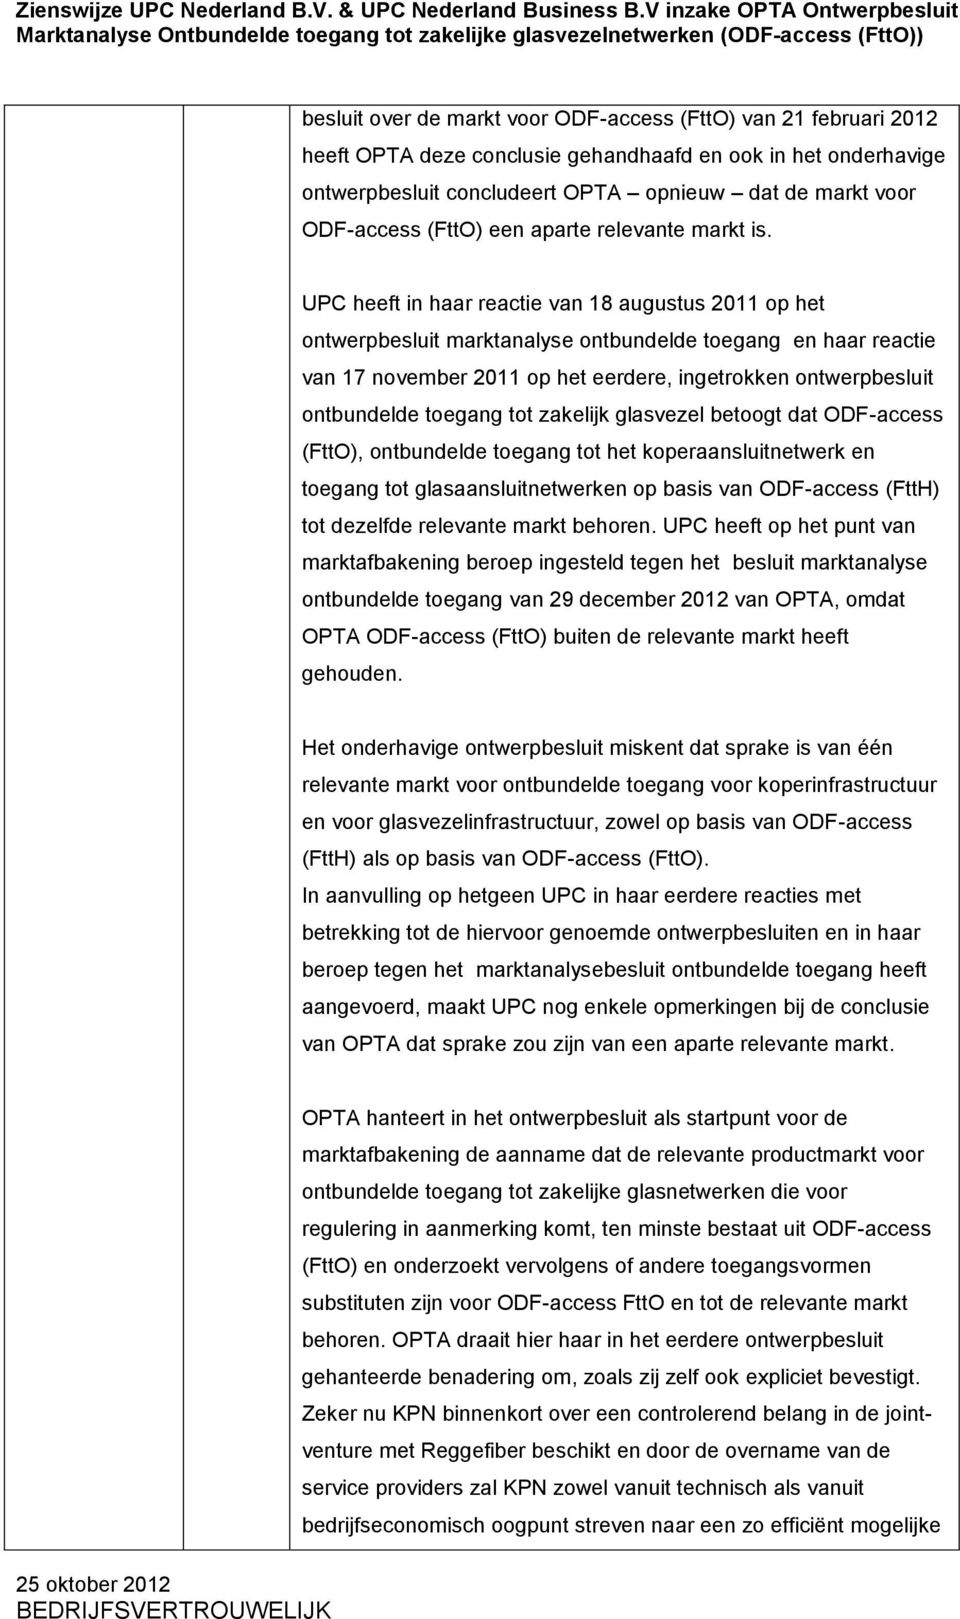 UPC heeft in haar reactie van 18 augustus 2011 op het ontwerpbesluit marktanalyse ontbundelde toegang en haar reactie van 17 november 2011 op het eerdere, ingetrokken ontwerpbesluit ontbundelde